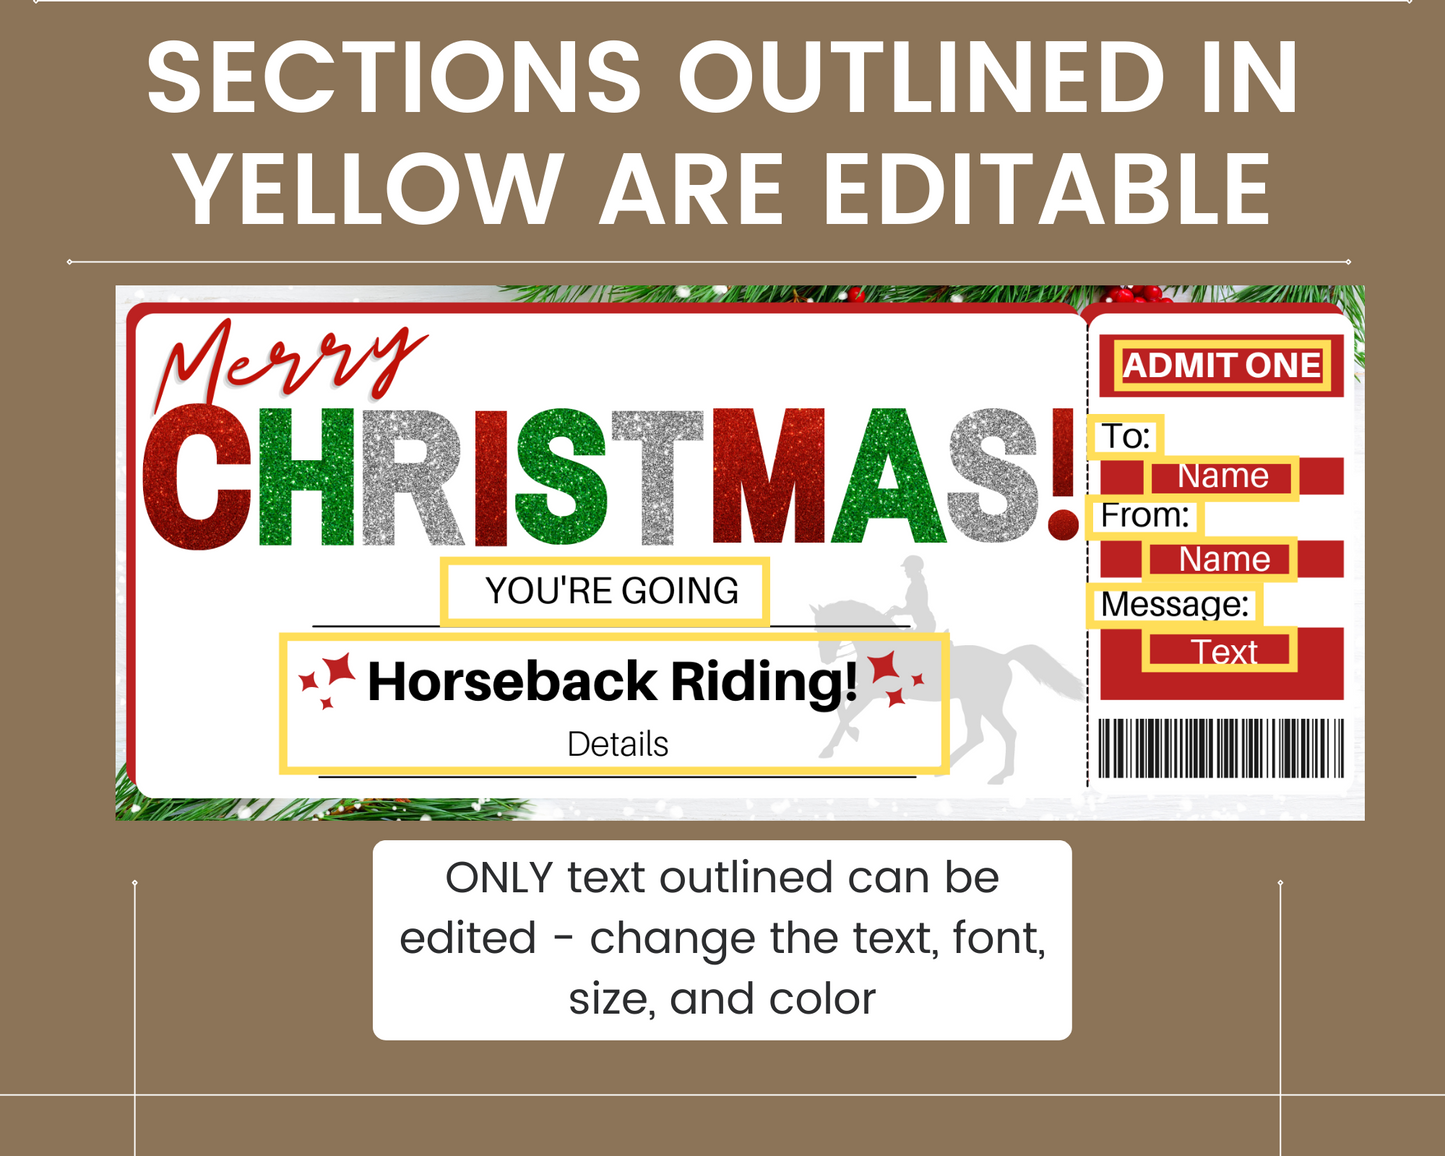 Christmas Horseback Riding Gift Certificate